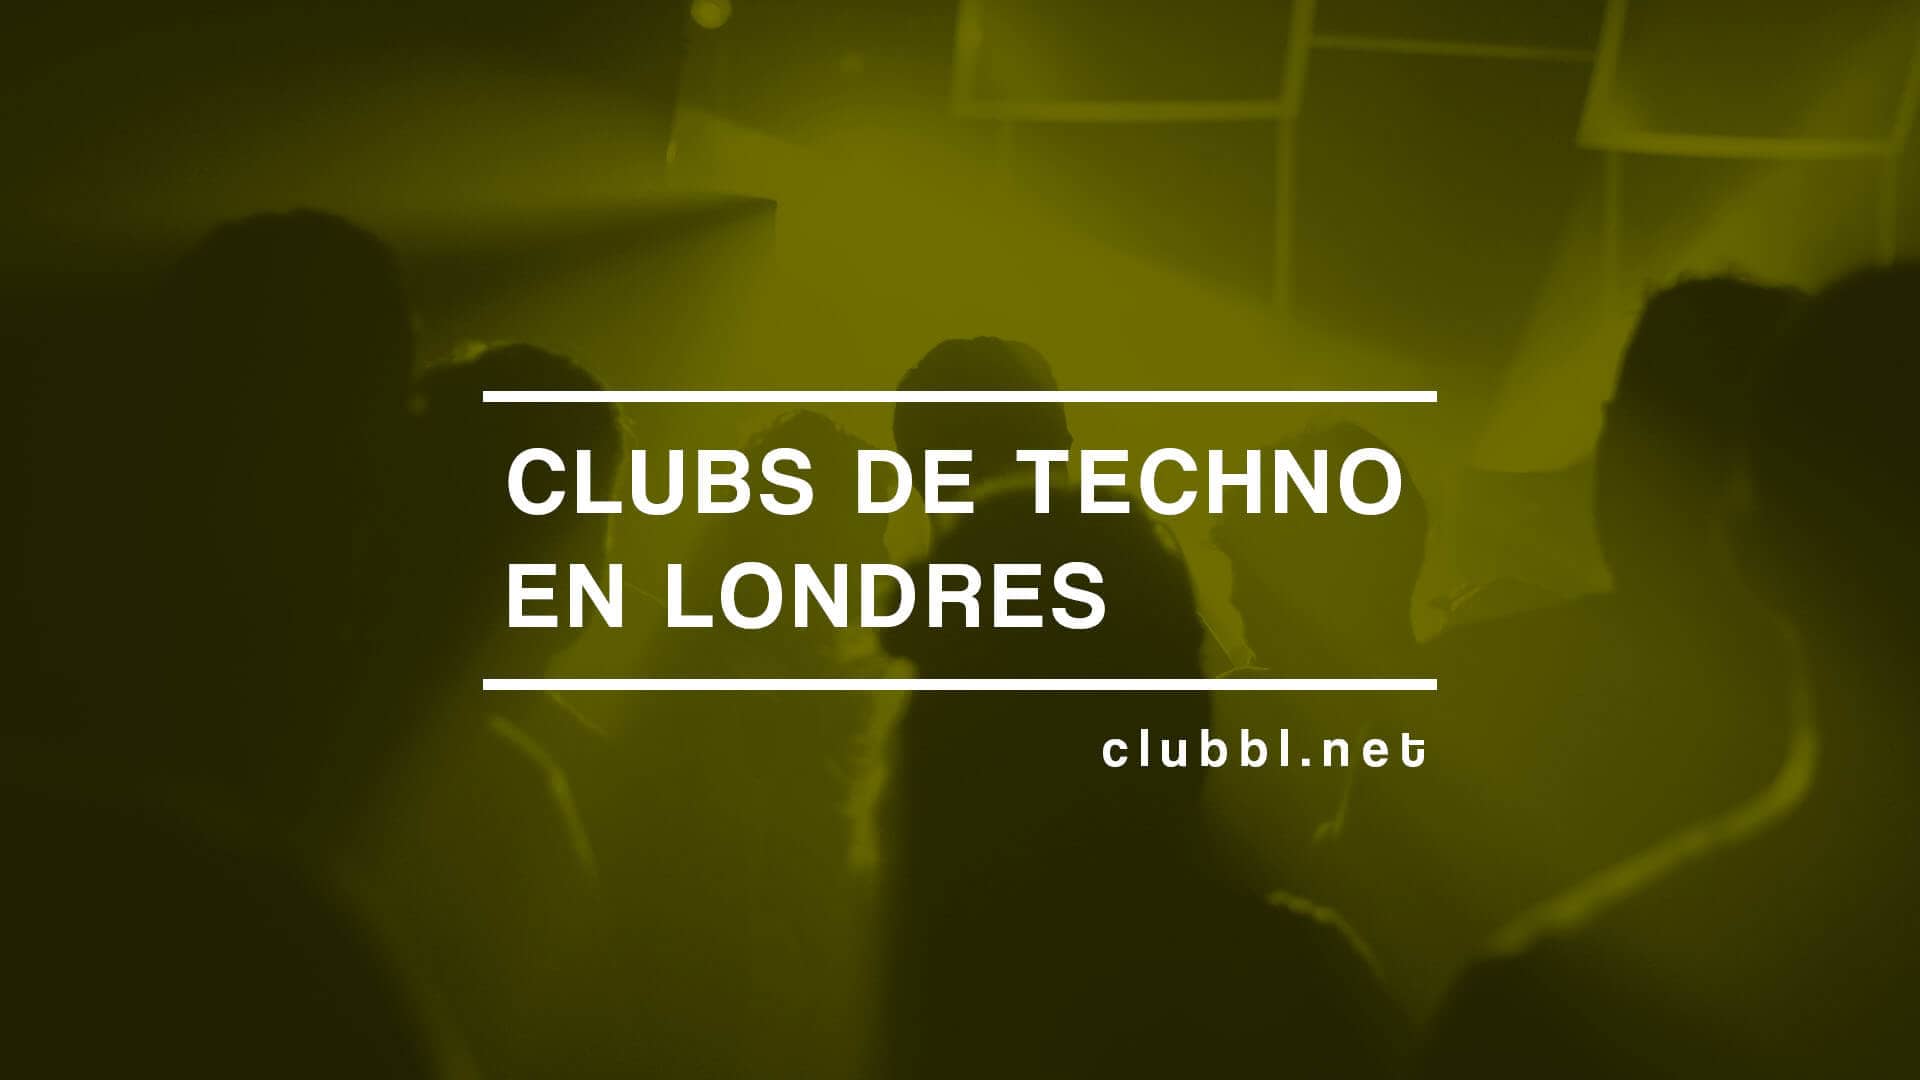 Descubre los diferentes clubs de techno en Londres y disfruta la escena clubbing en la ciudad